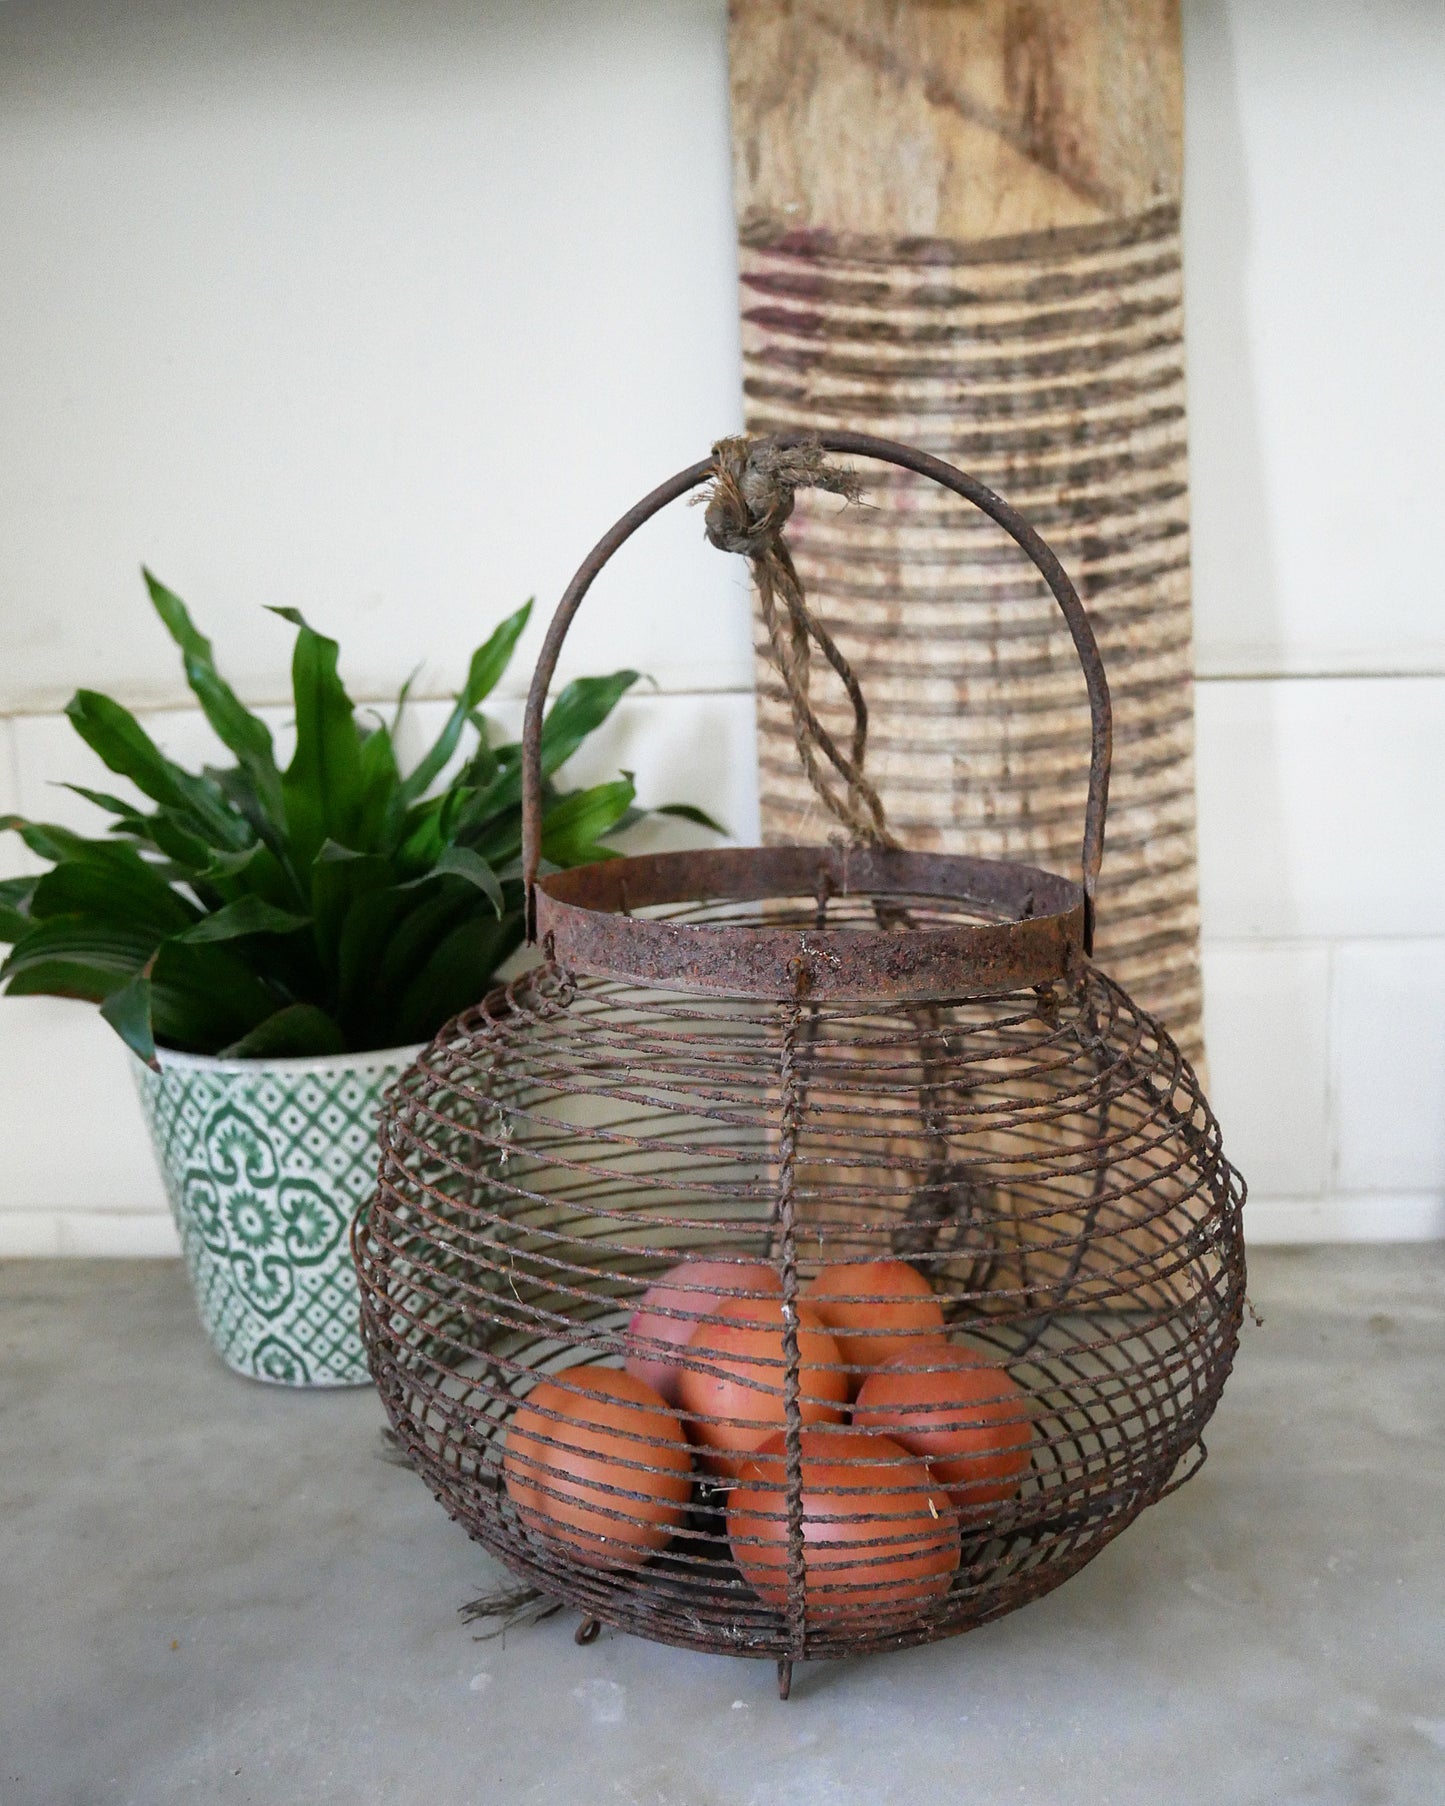 Vintage French egg basket